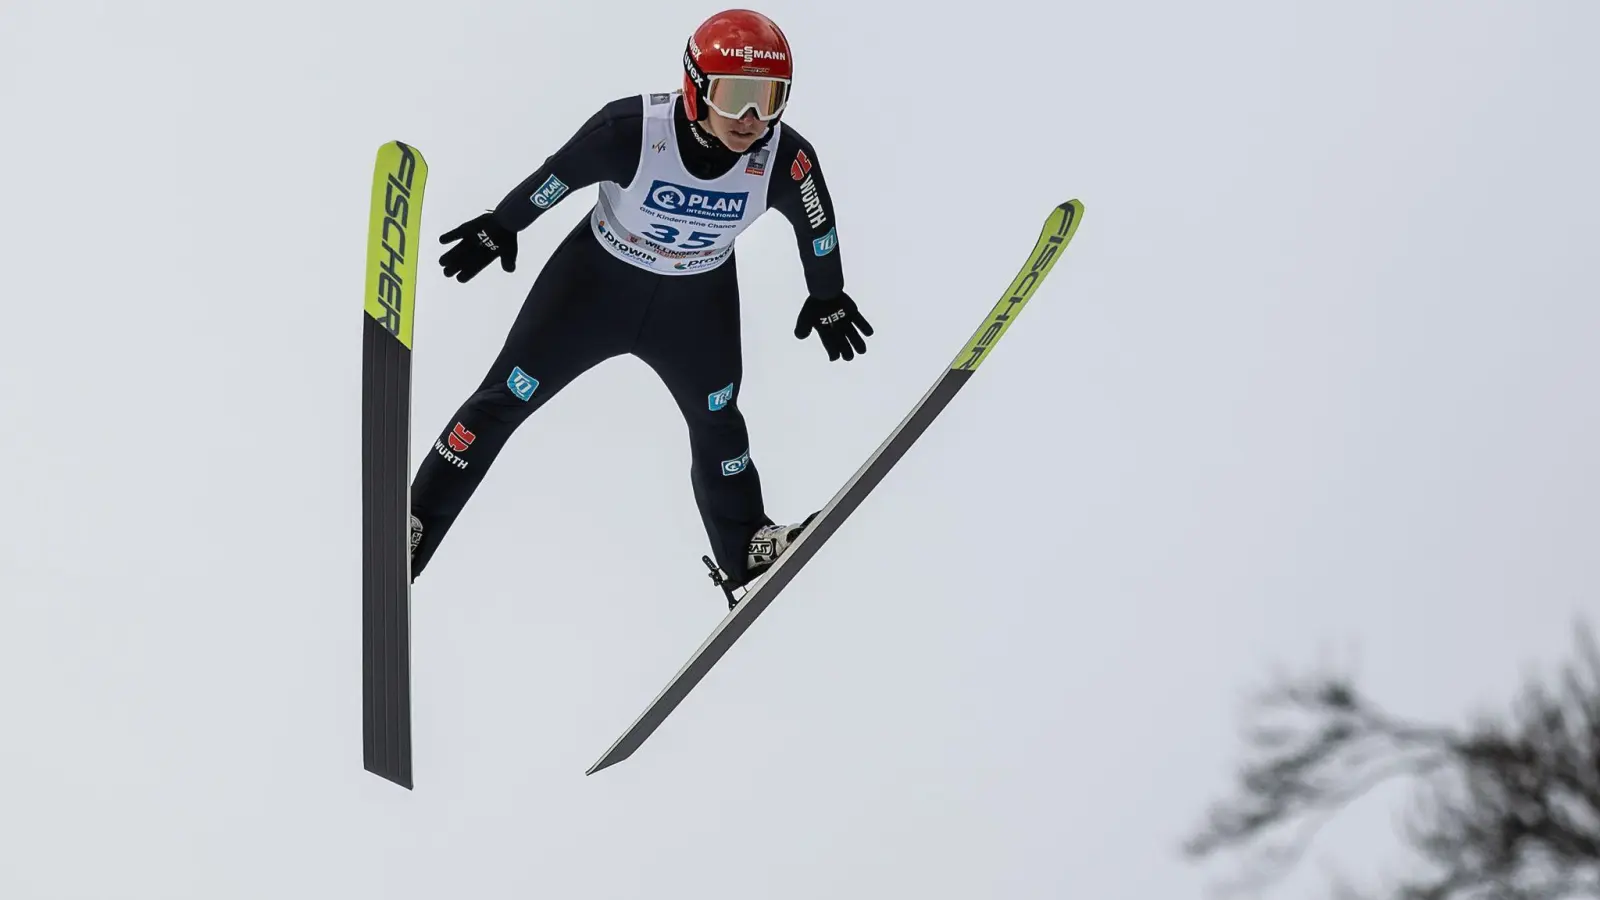 Skispringerin Katharina Althaus kam in Willingen mit Sprüngen über 133 und 149,5 Metern zum Sieg. (Foto: Swen Pförtner/dpa)